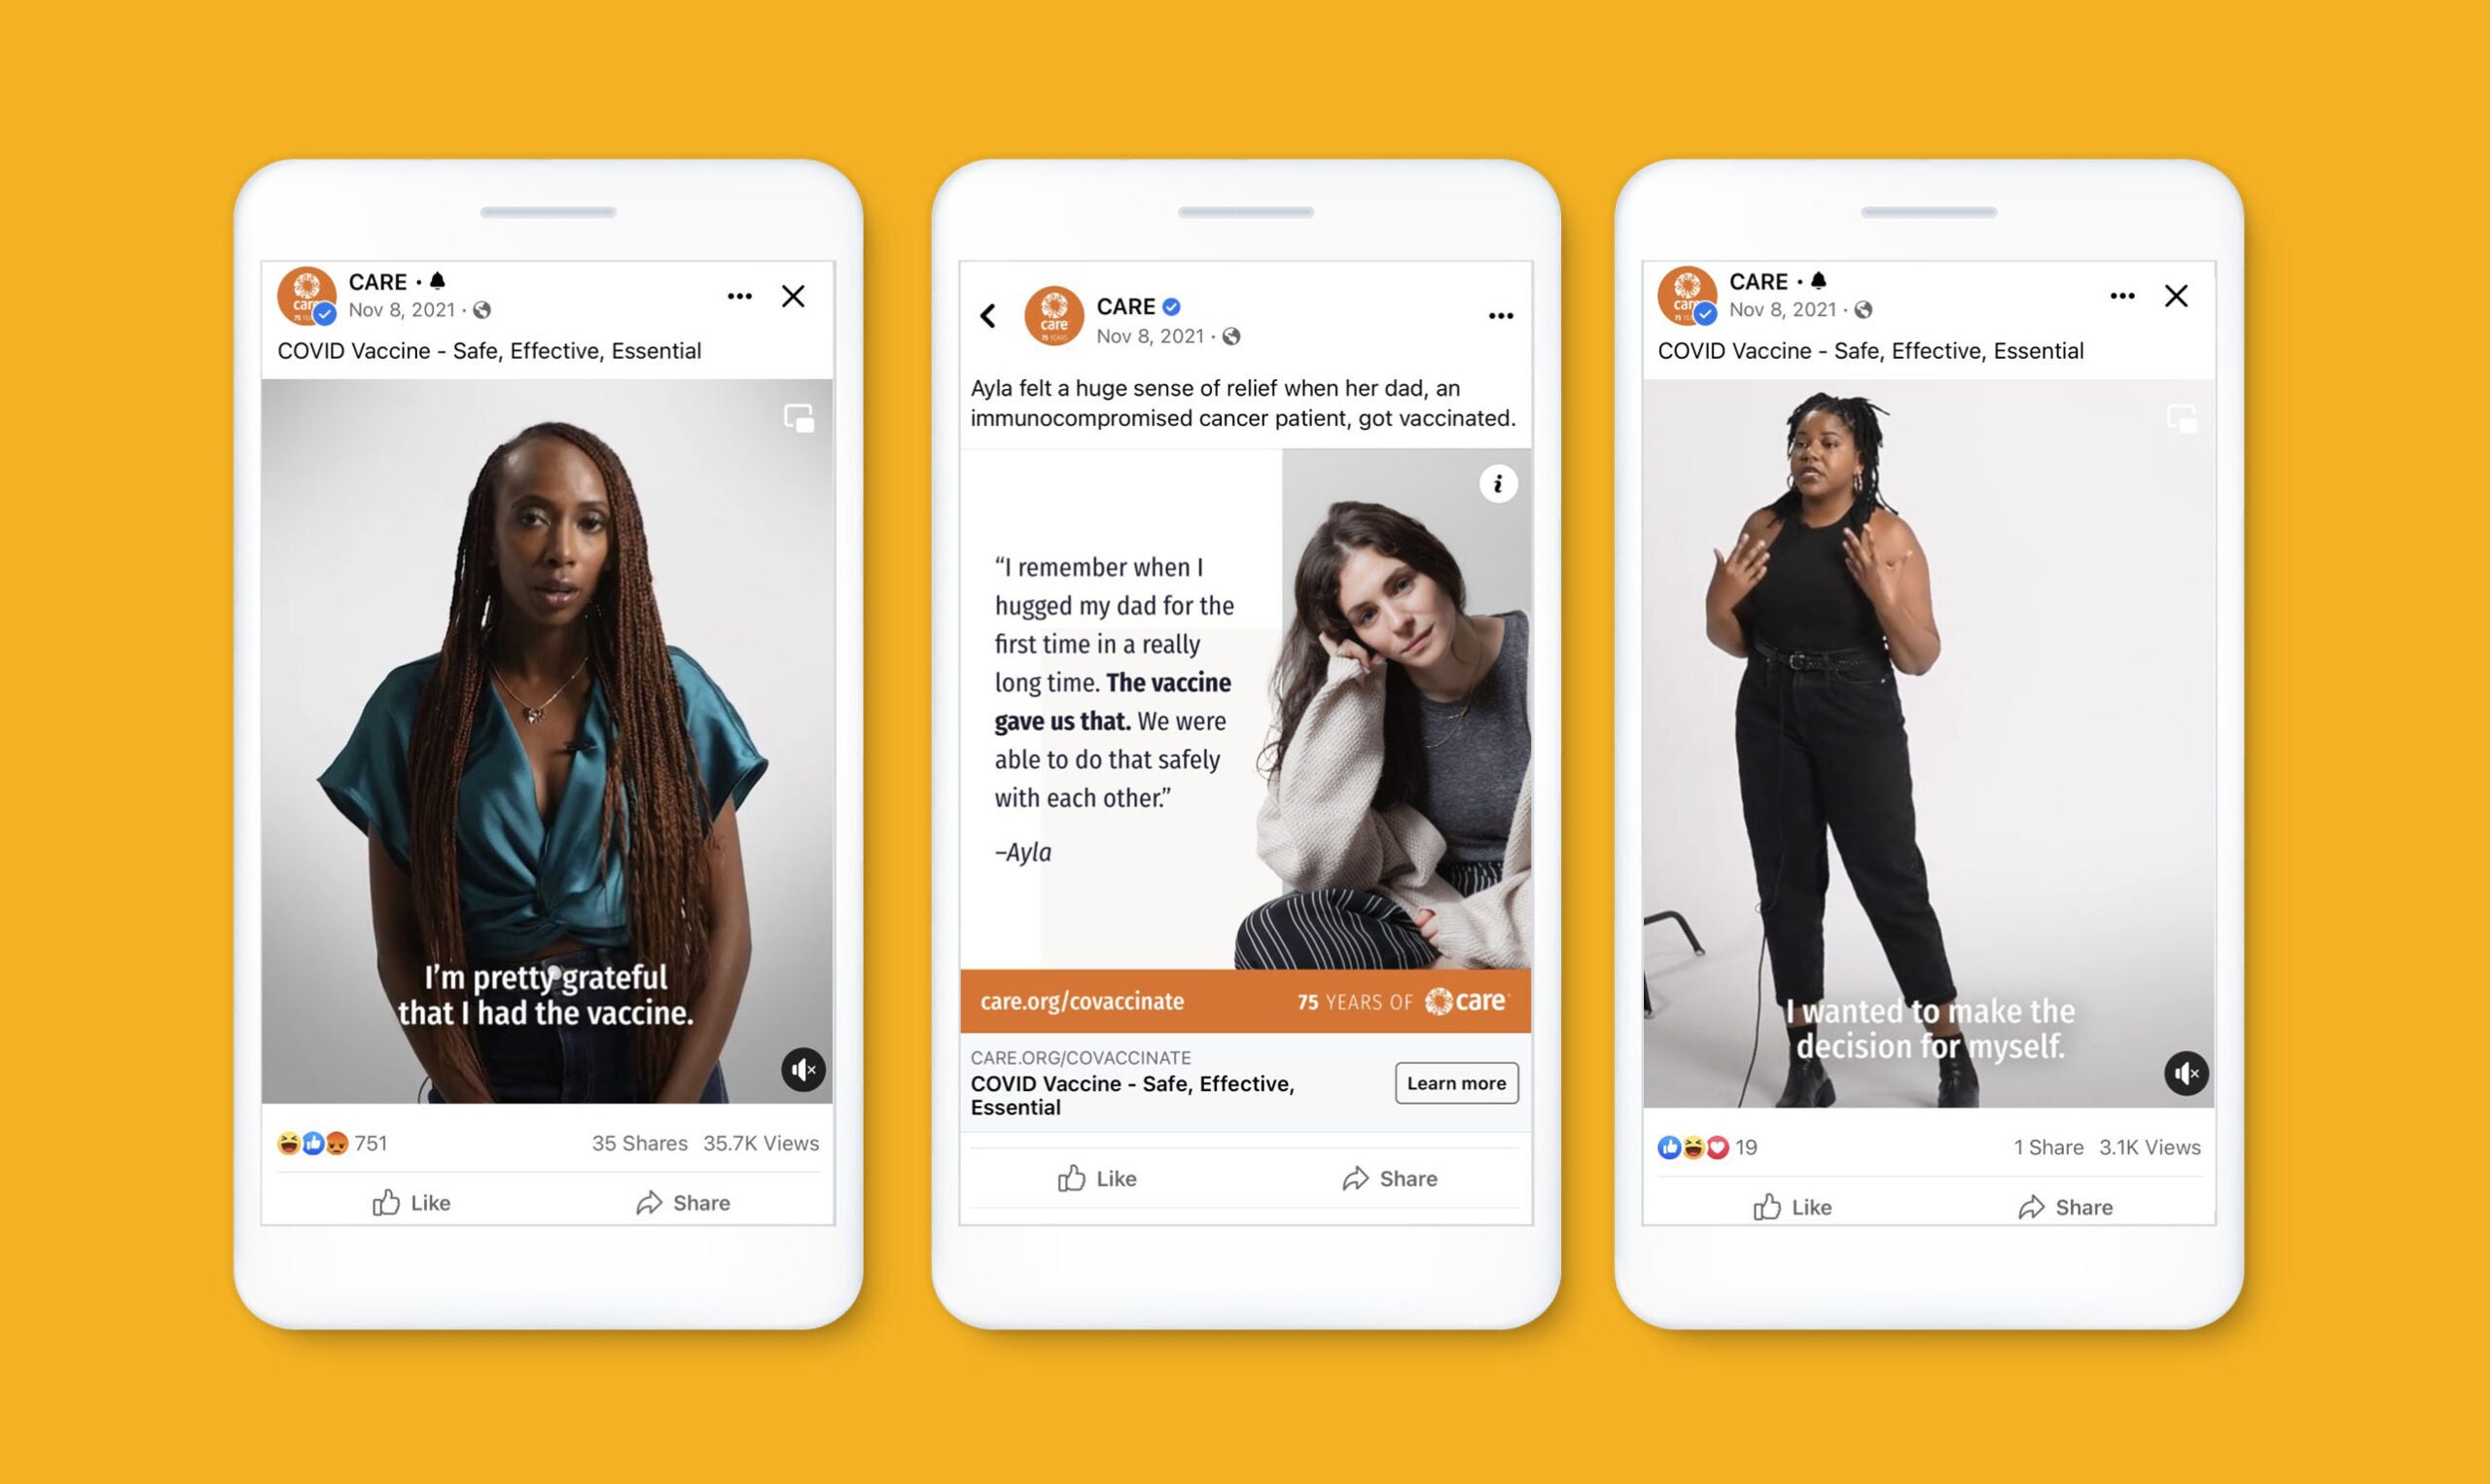 Exemples de trois publicités diffusées sur Facebook et Instagram de femmes partageant leurs histoires personnelles sur le choix de se faire vacciner contre la COVID-19.